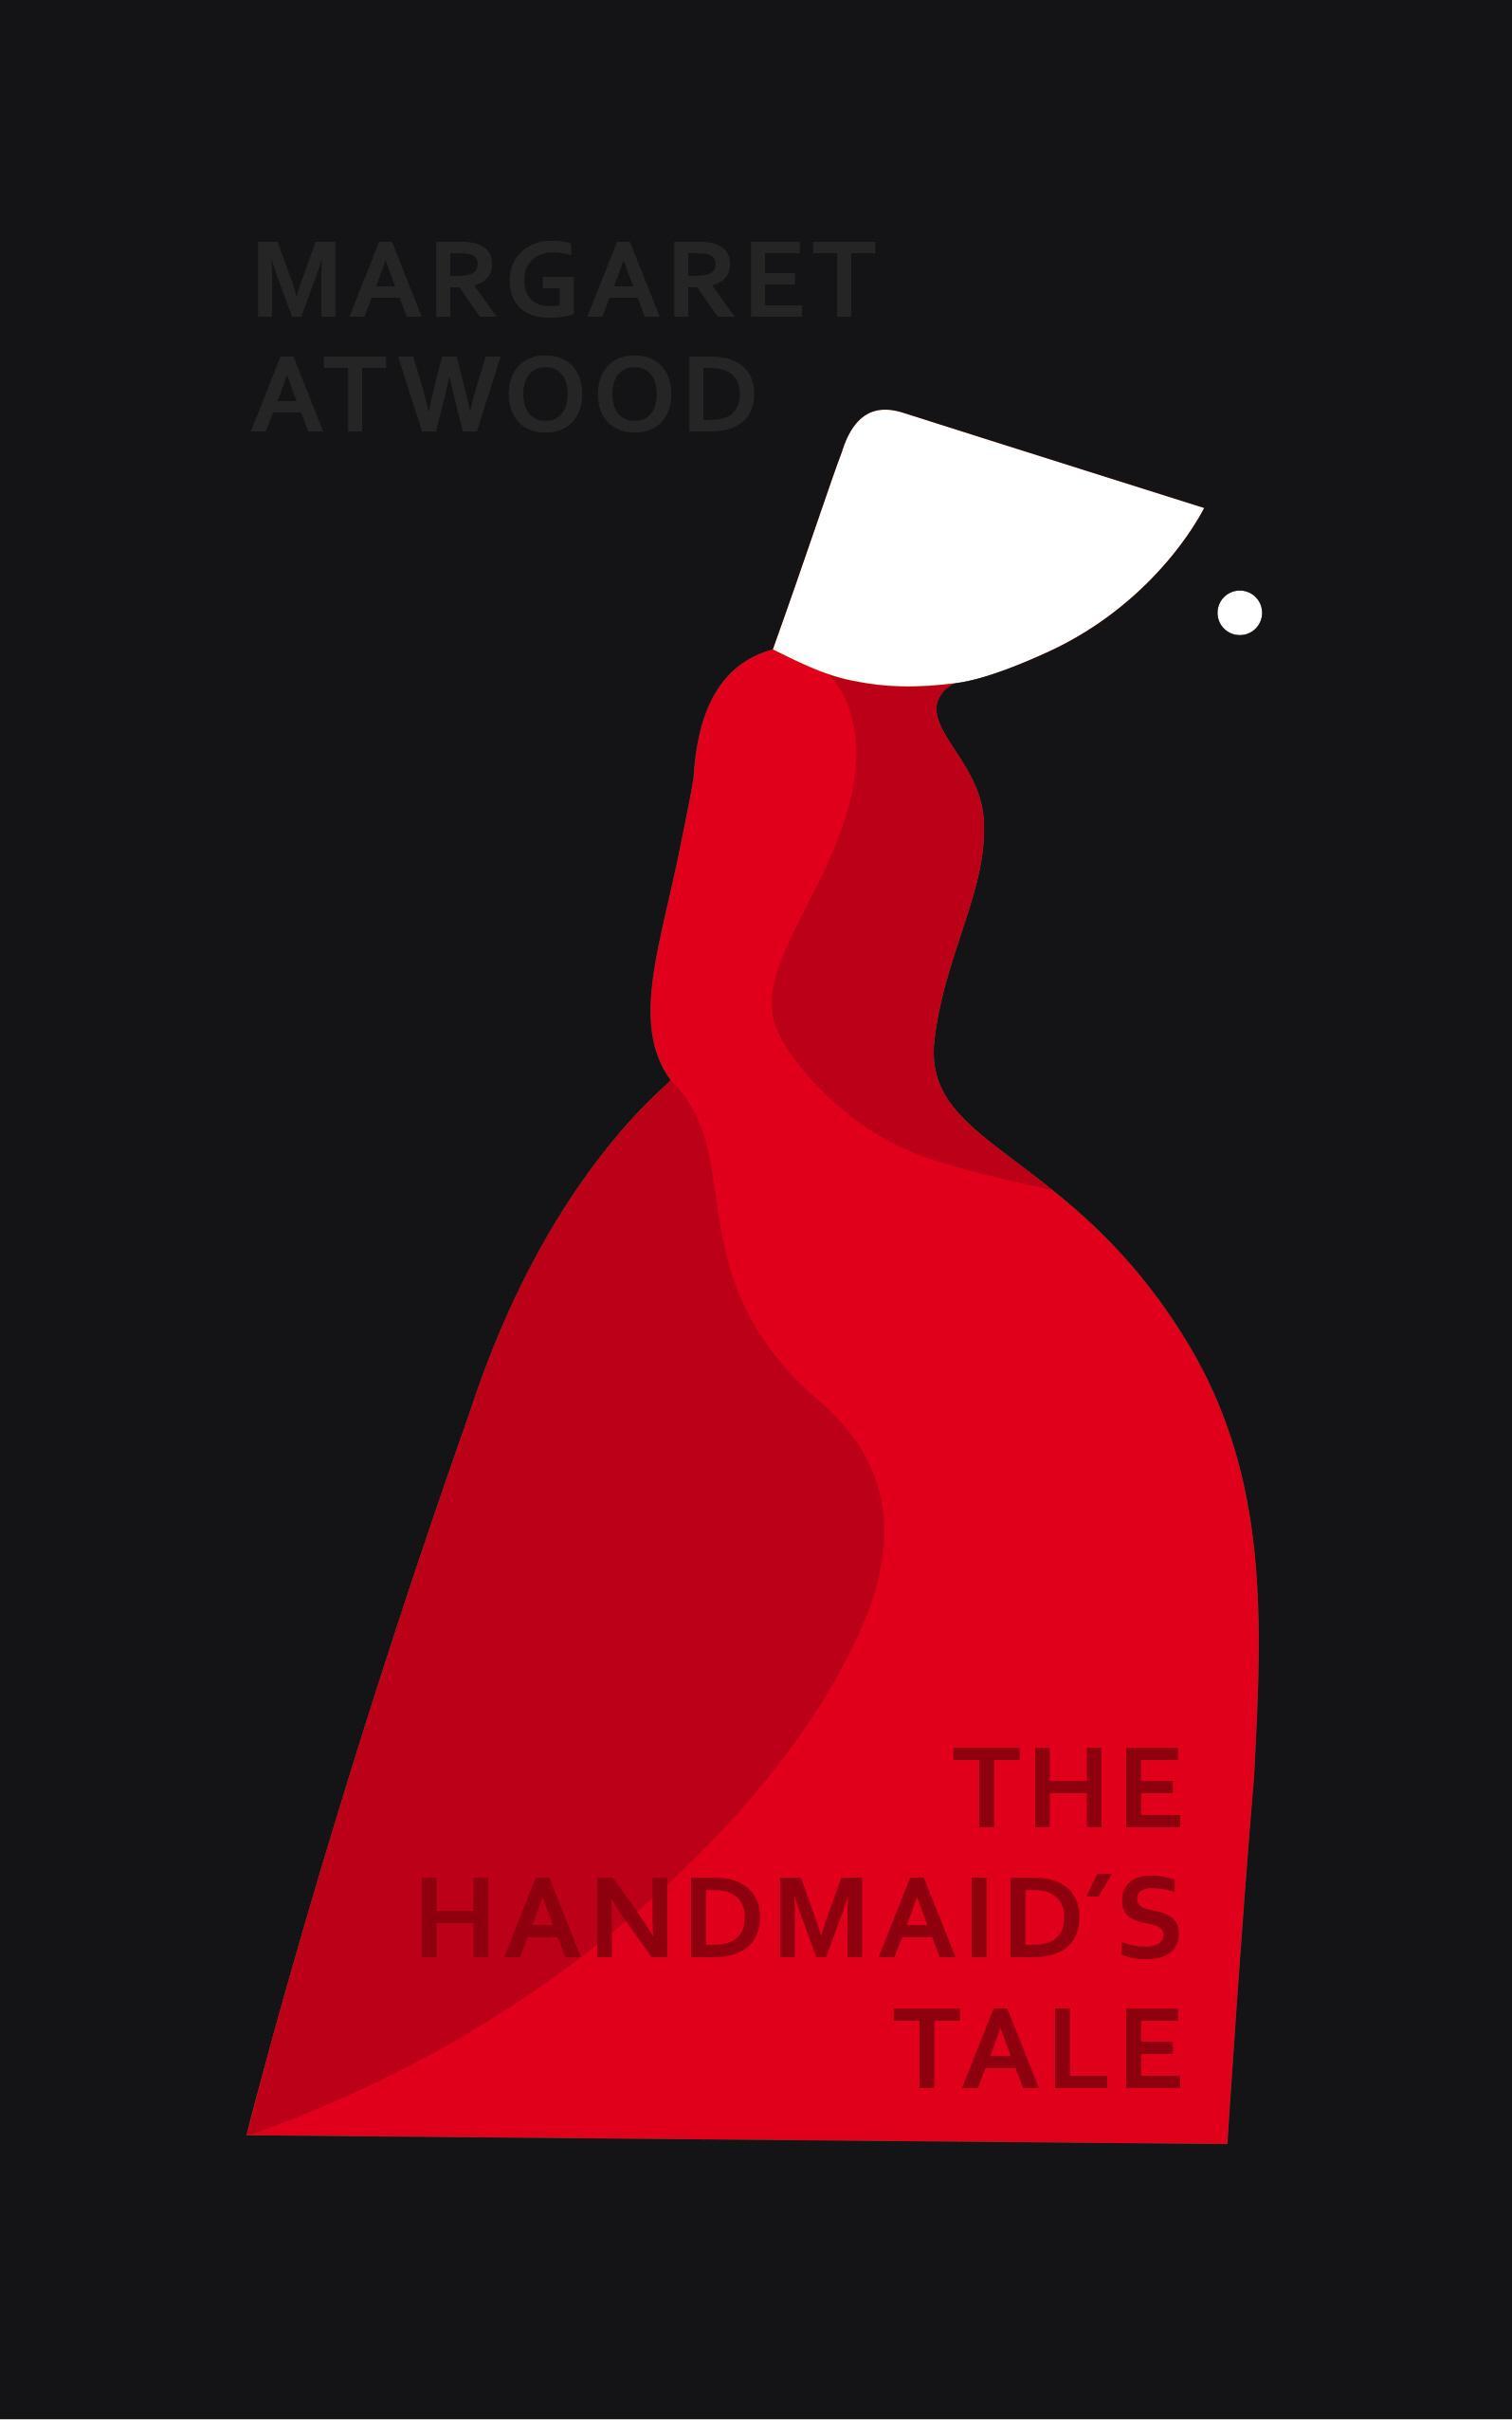 Handmaid's Tale - Margaret Atwood